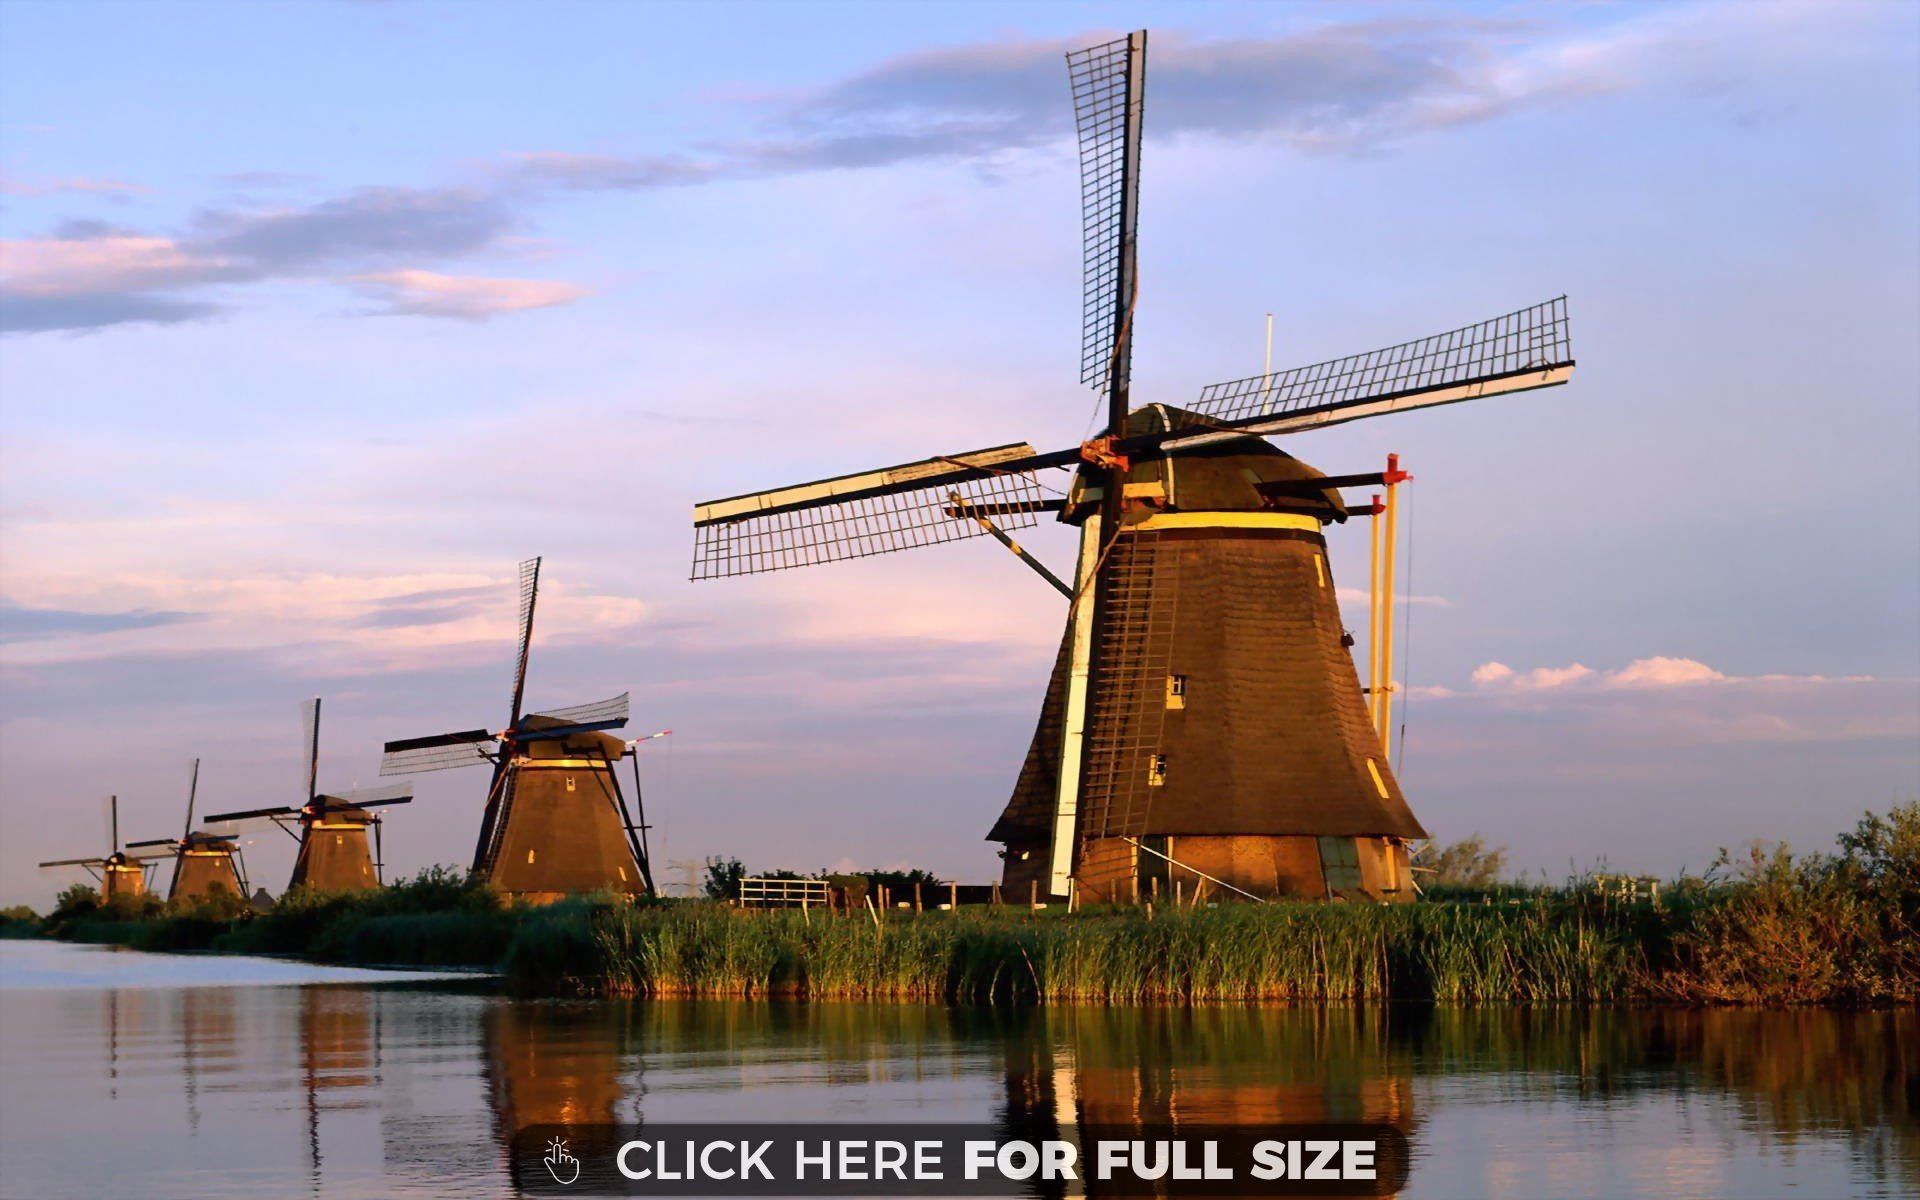 Dutch Windmills wallpaper | Desktop Wallpapers | Pinterest ...